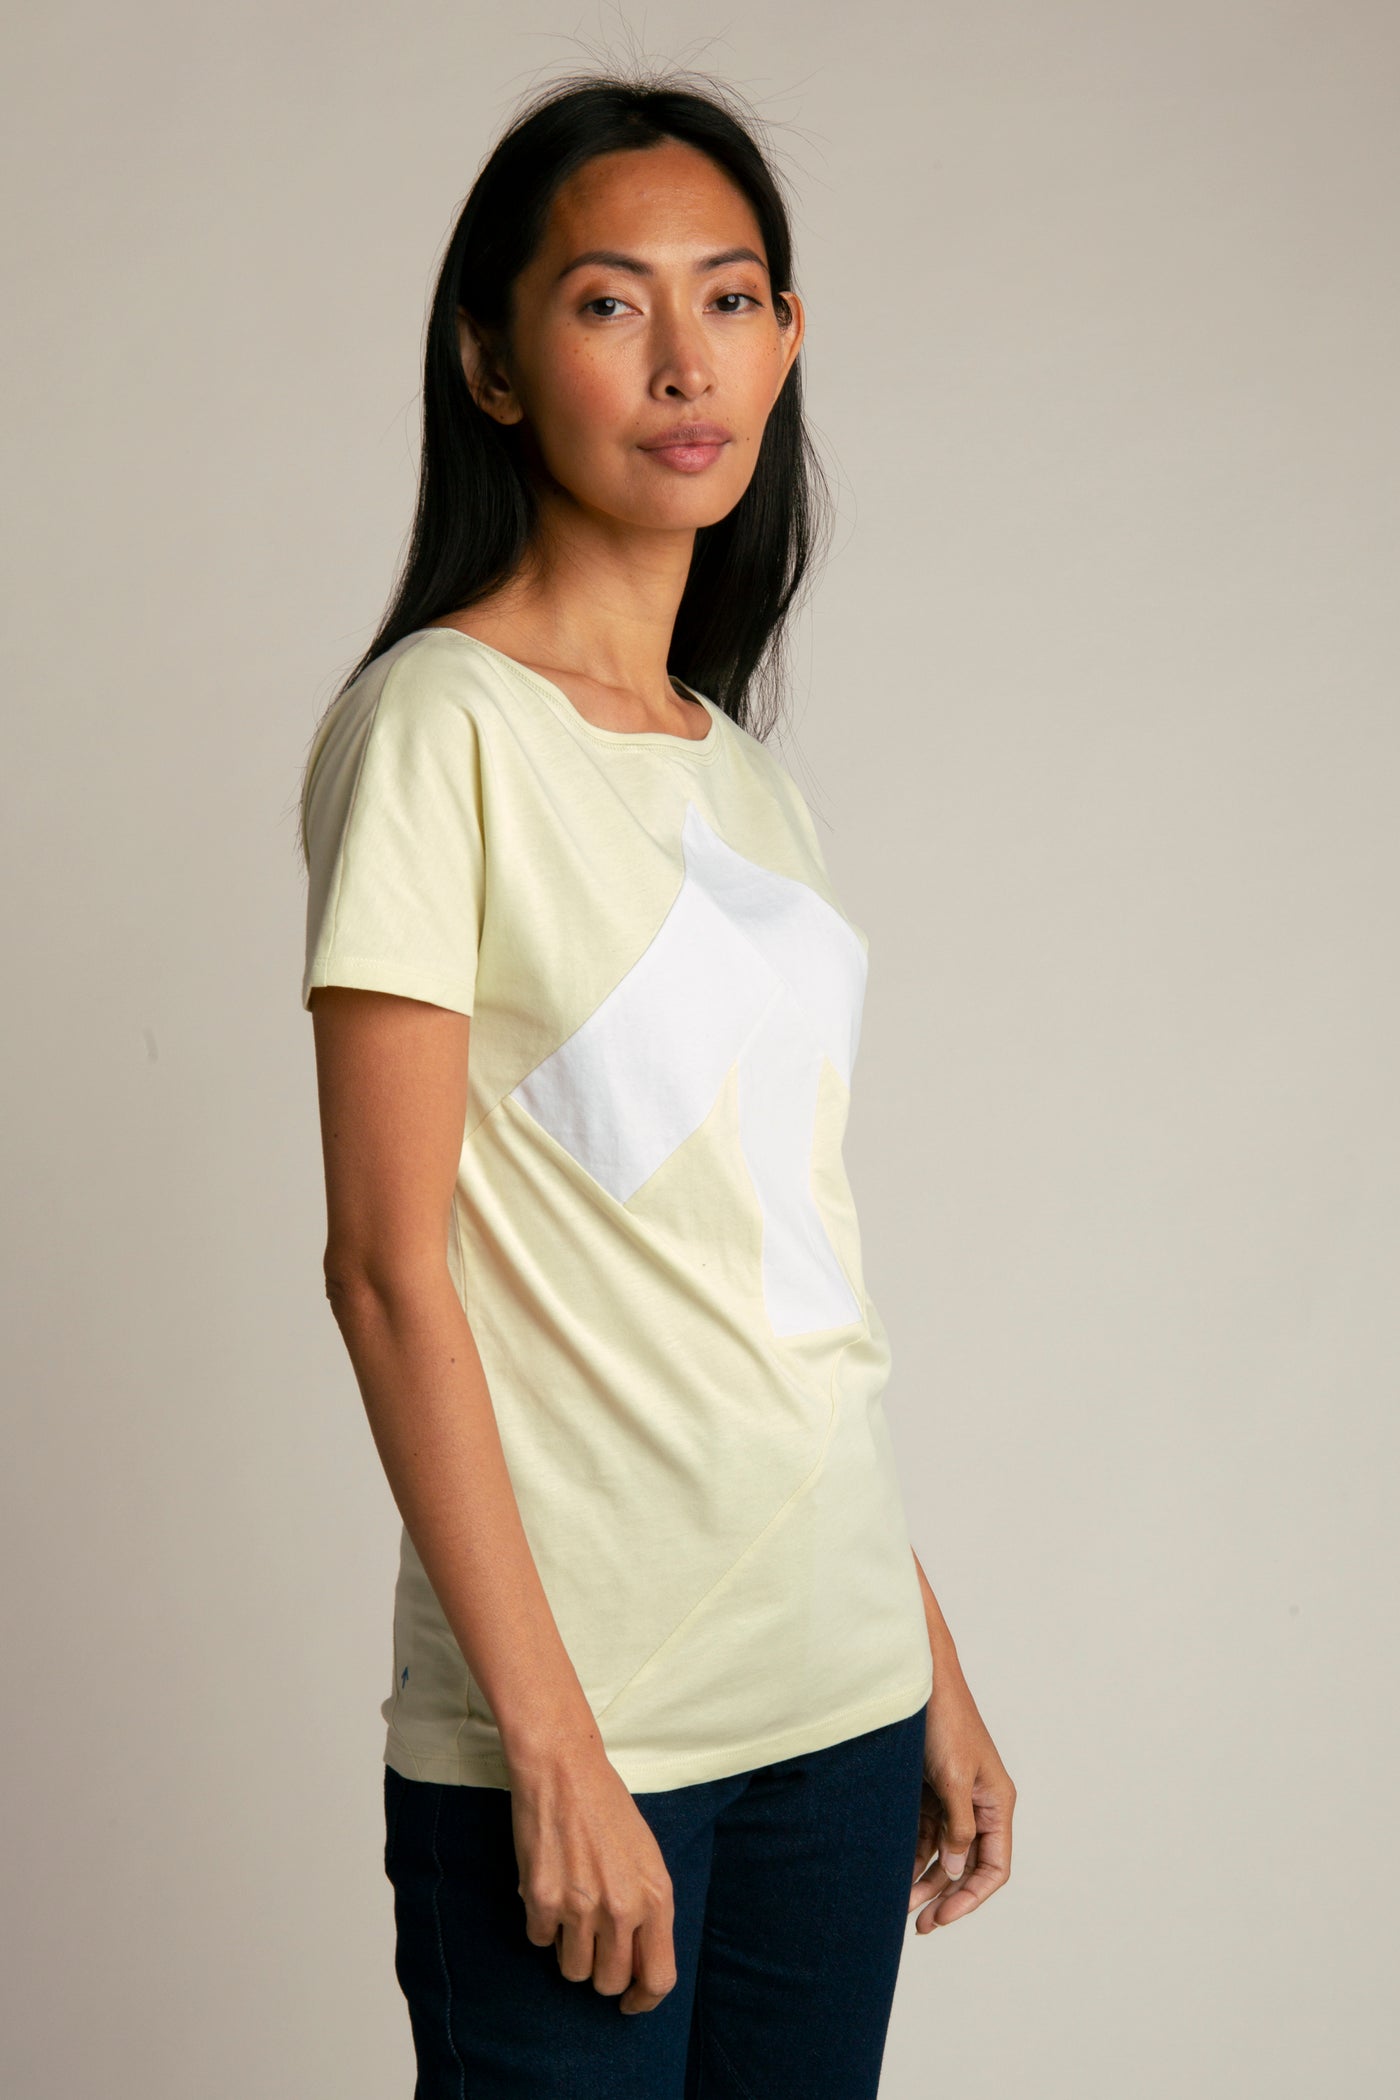 Up-shirt for women | Light green, white